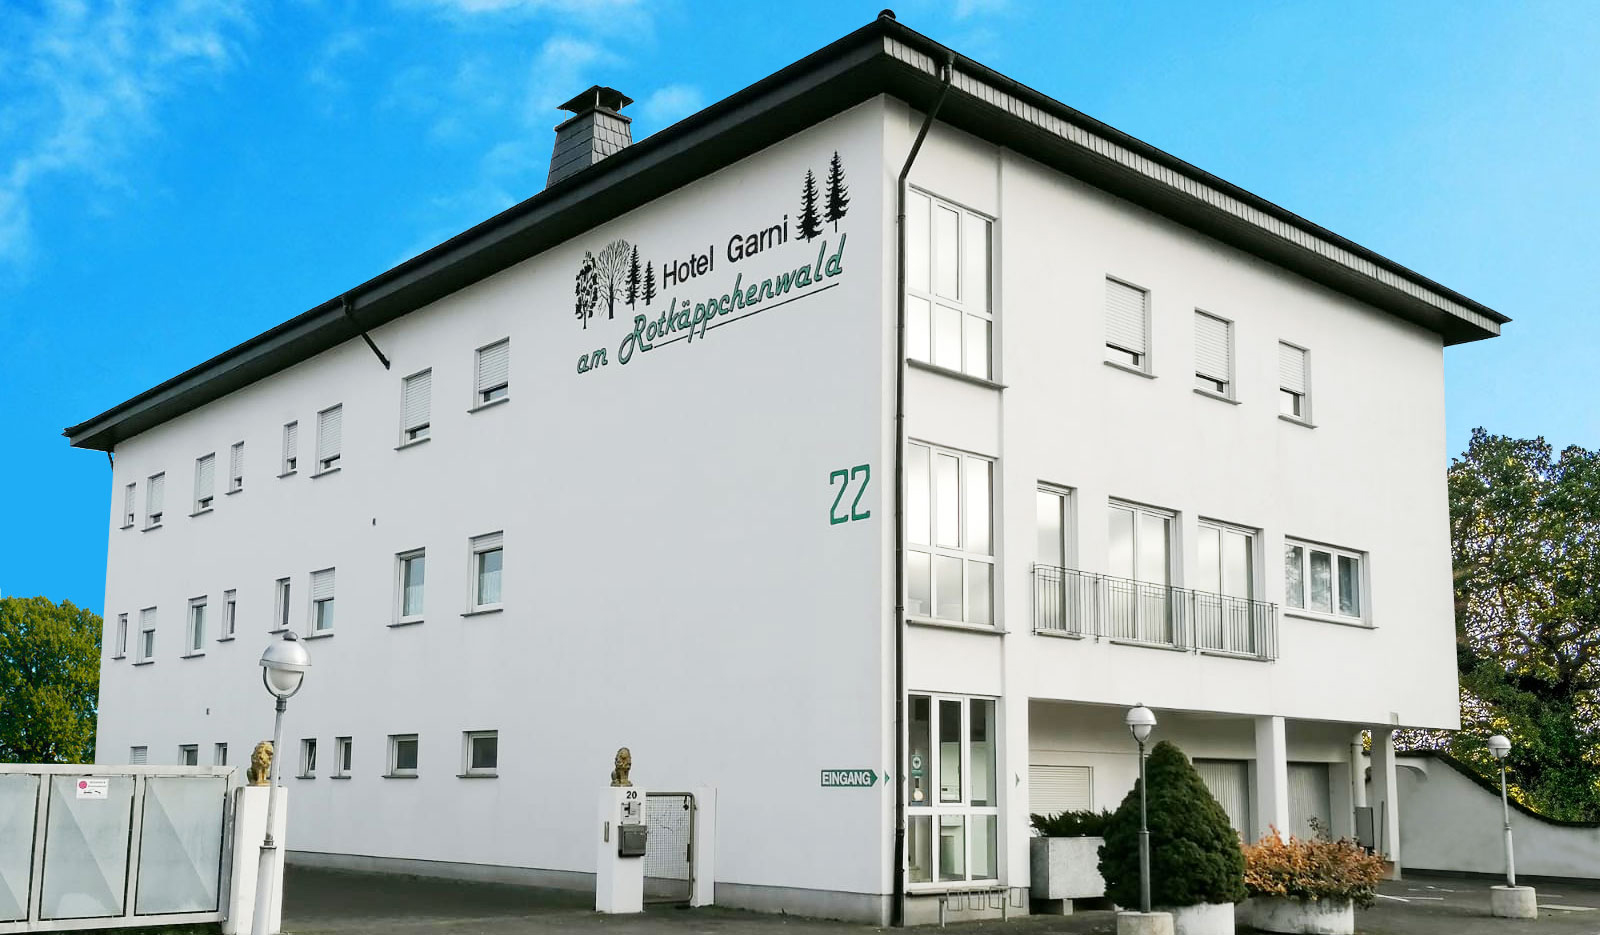 Hotel Garni - Hotel am Rotkäppchenwald